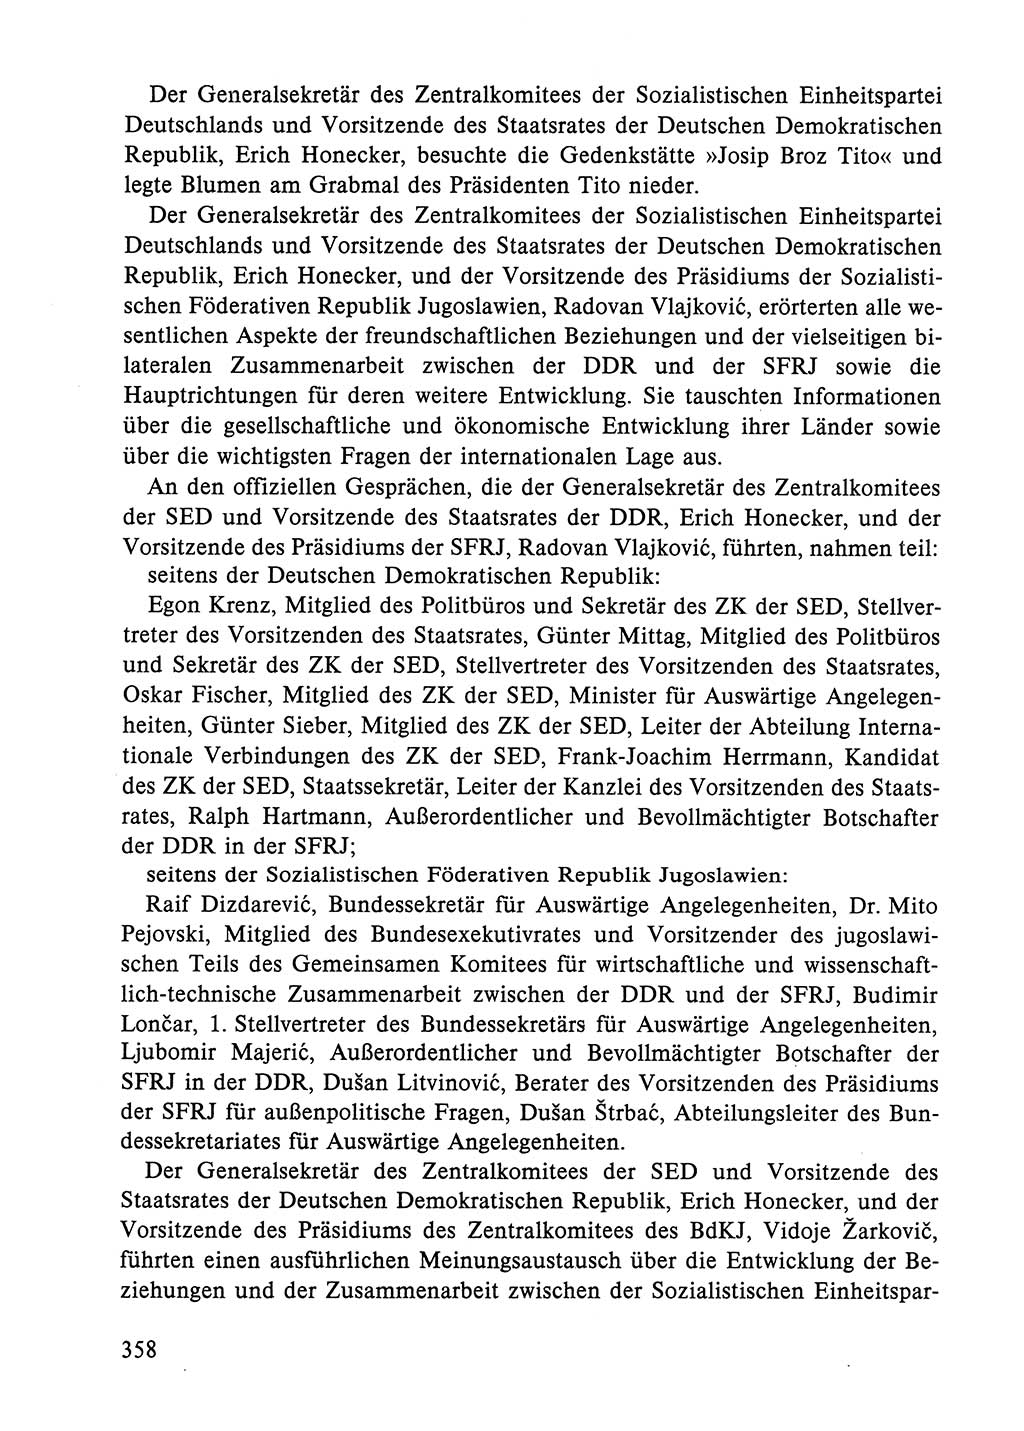 Dokumente der Sozialistischen Einheitspartei Deutschlands (SED) [Deutsche Demokratische Republik (DDR)] 1984-1985, Seite 358 (Dok. SED DDR 1984-1985, S. 358)